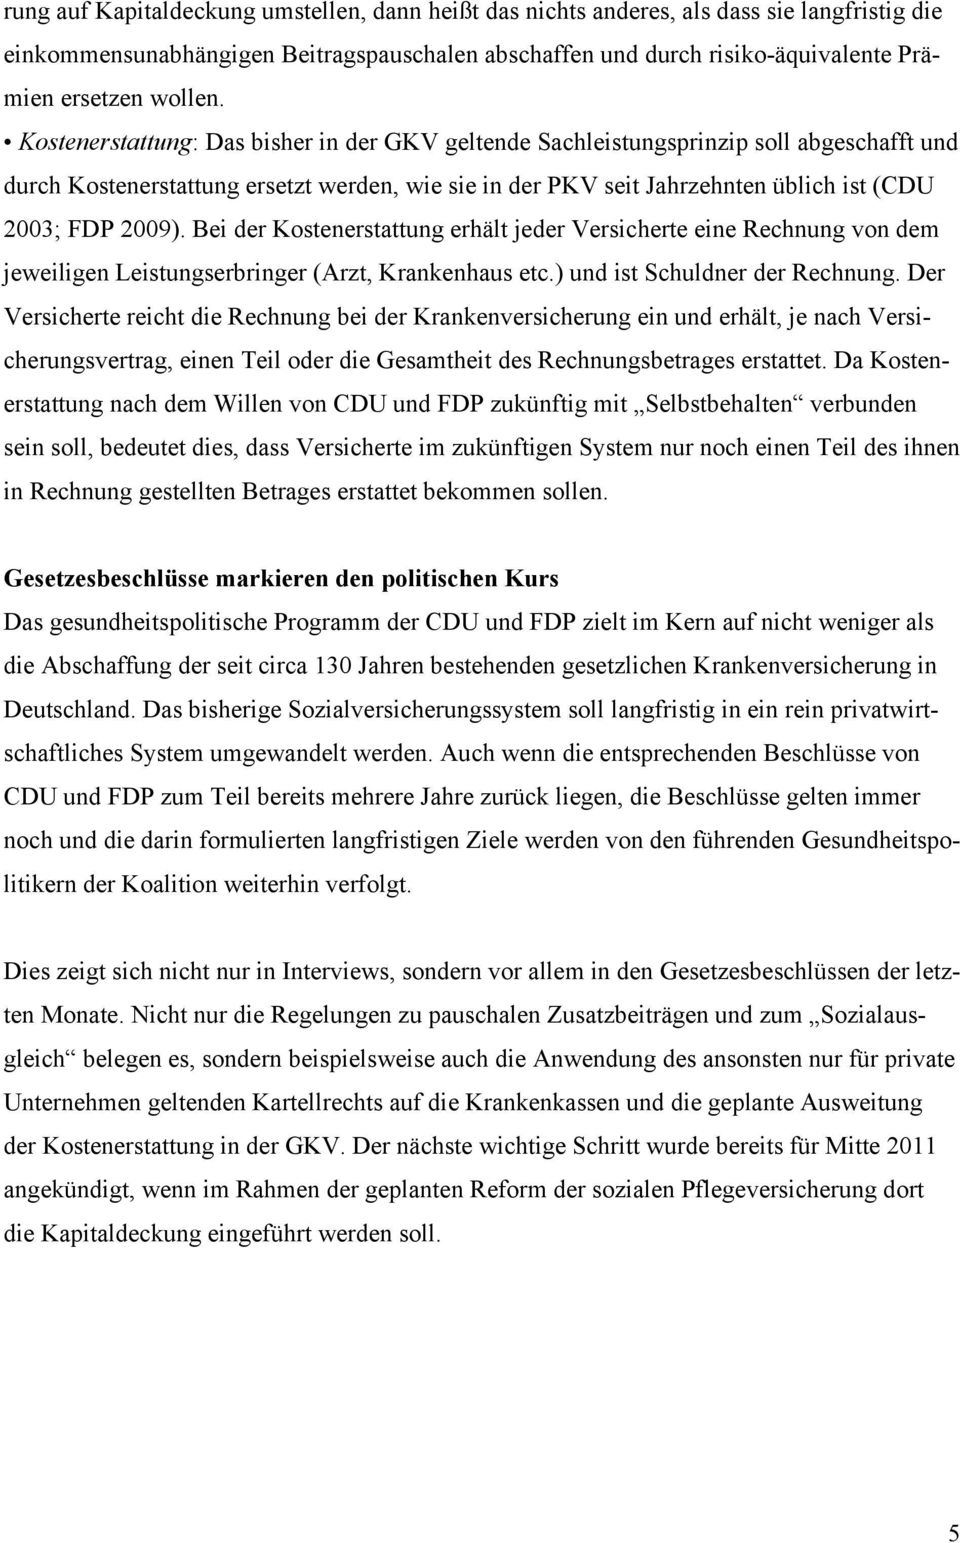 Kostenerstattung: Das bisher in der GKV geltende Sachleistungsprinzip soll abgeschafft und durch Kostenerstattung ersetzt werden, wie sie in der PKV seit Jahrzehnten üblich ist (CDU 2003; FDP 2009).